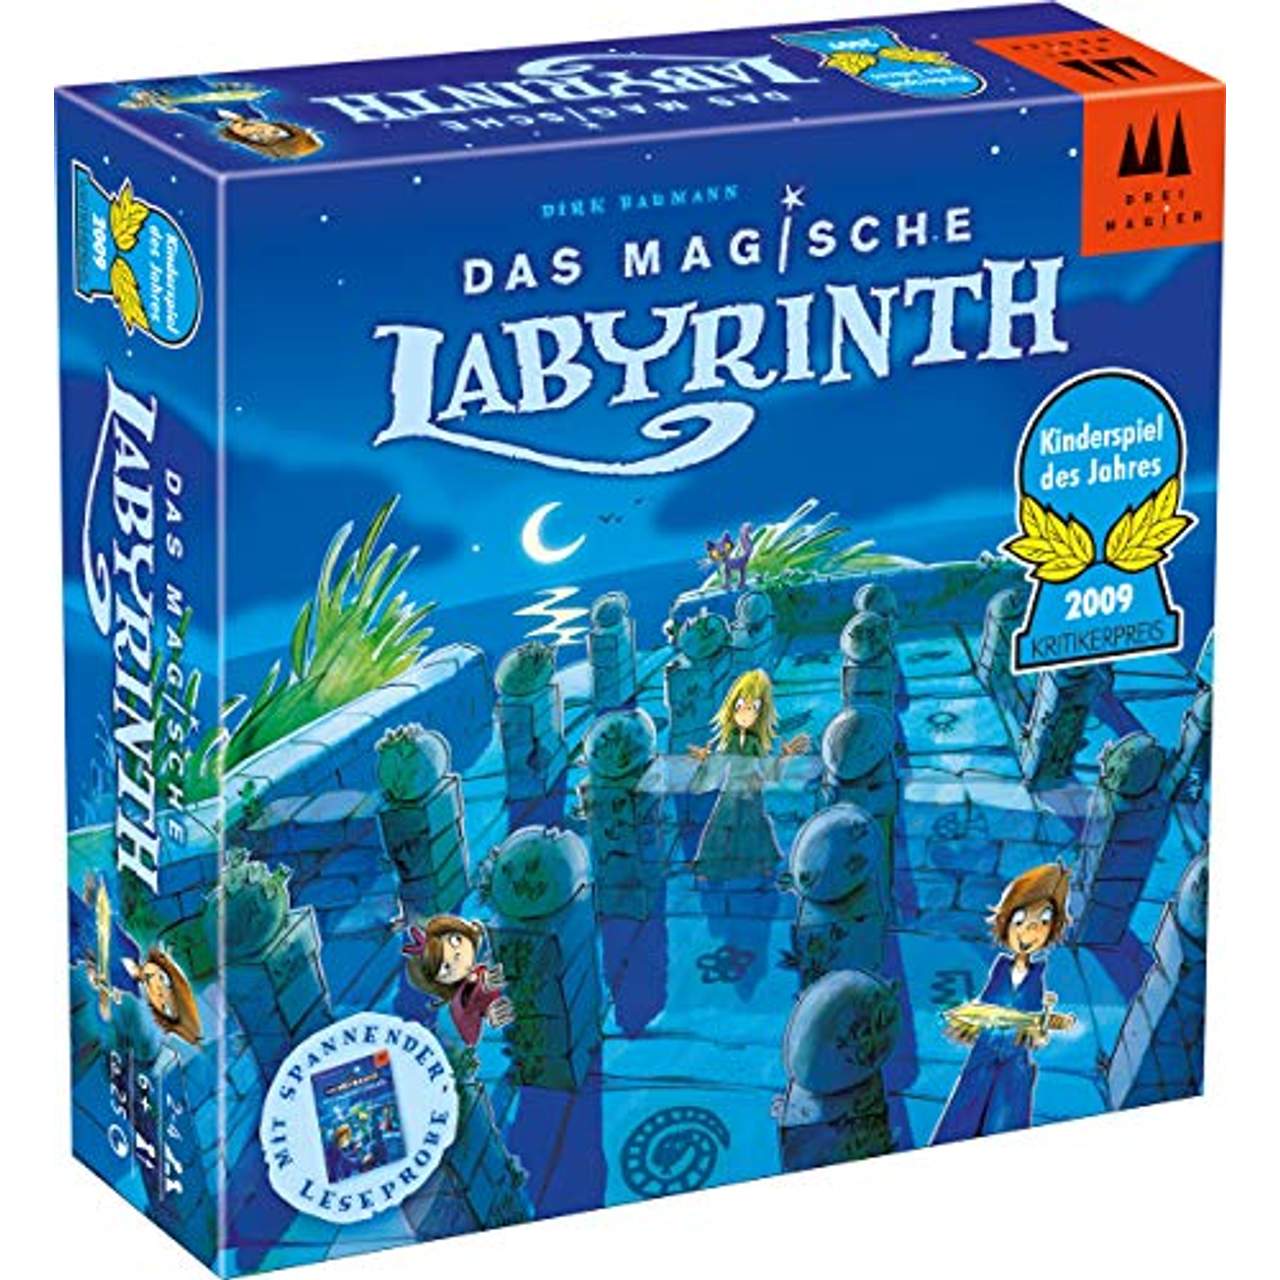 Das Magische Labyrinth, Kinderspiel des Jahres 2009